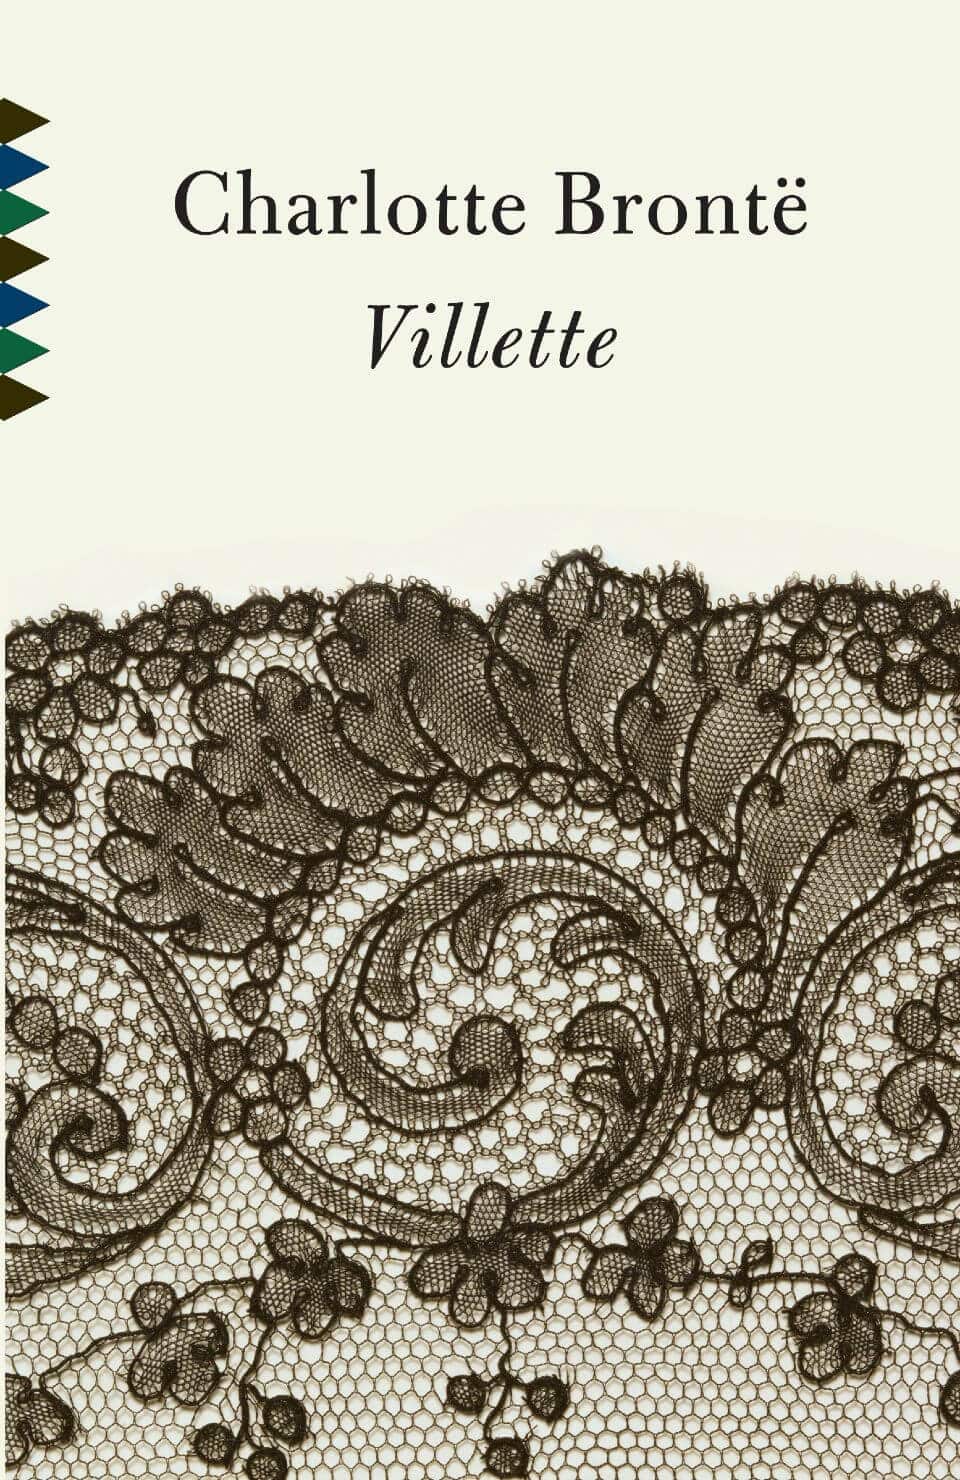 villette book cover 